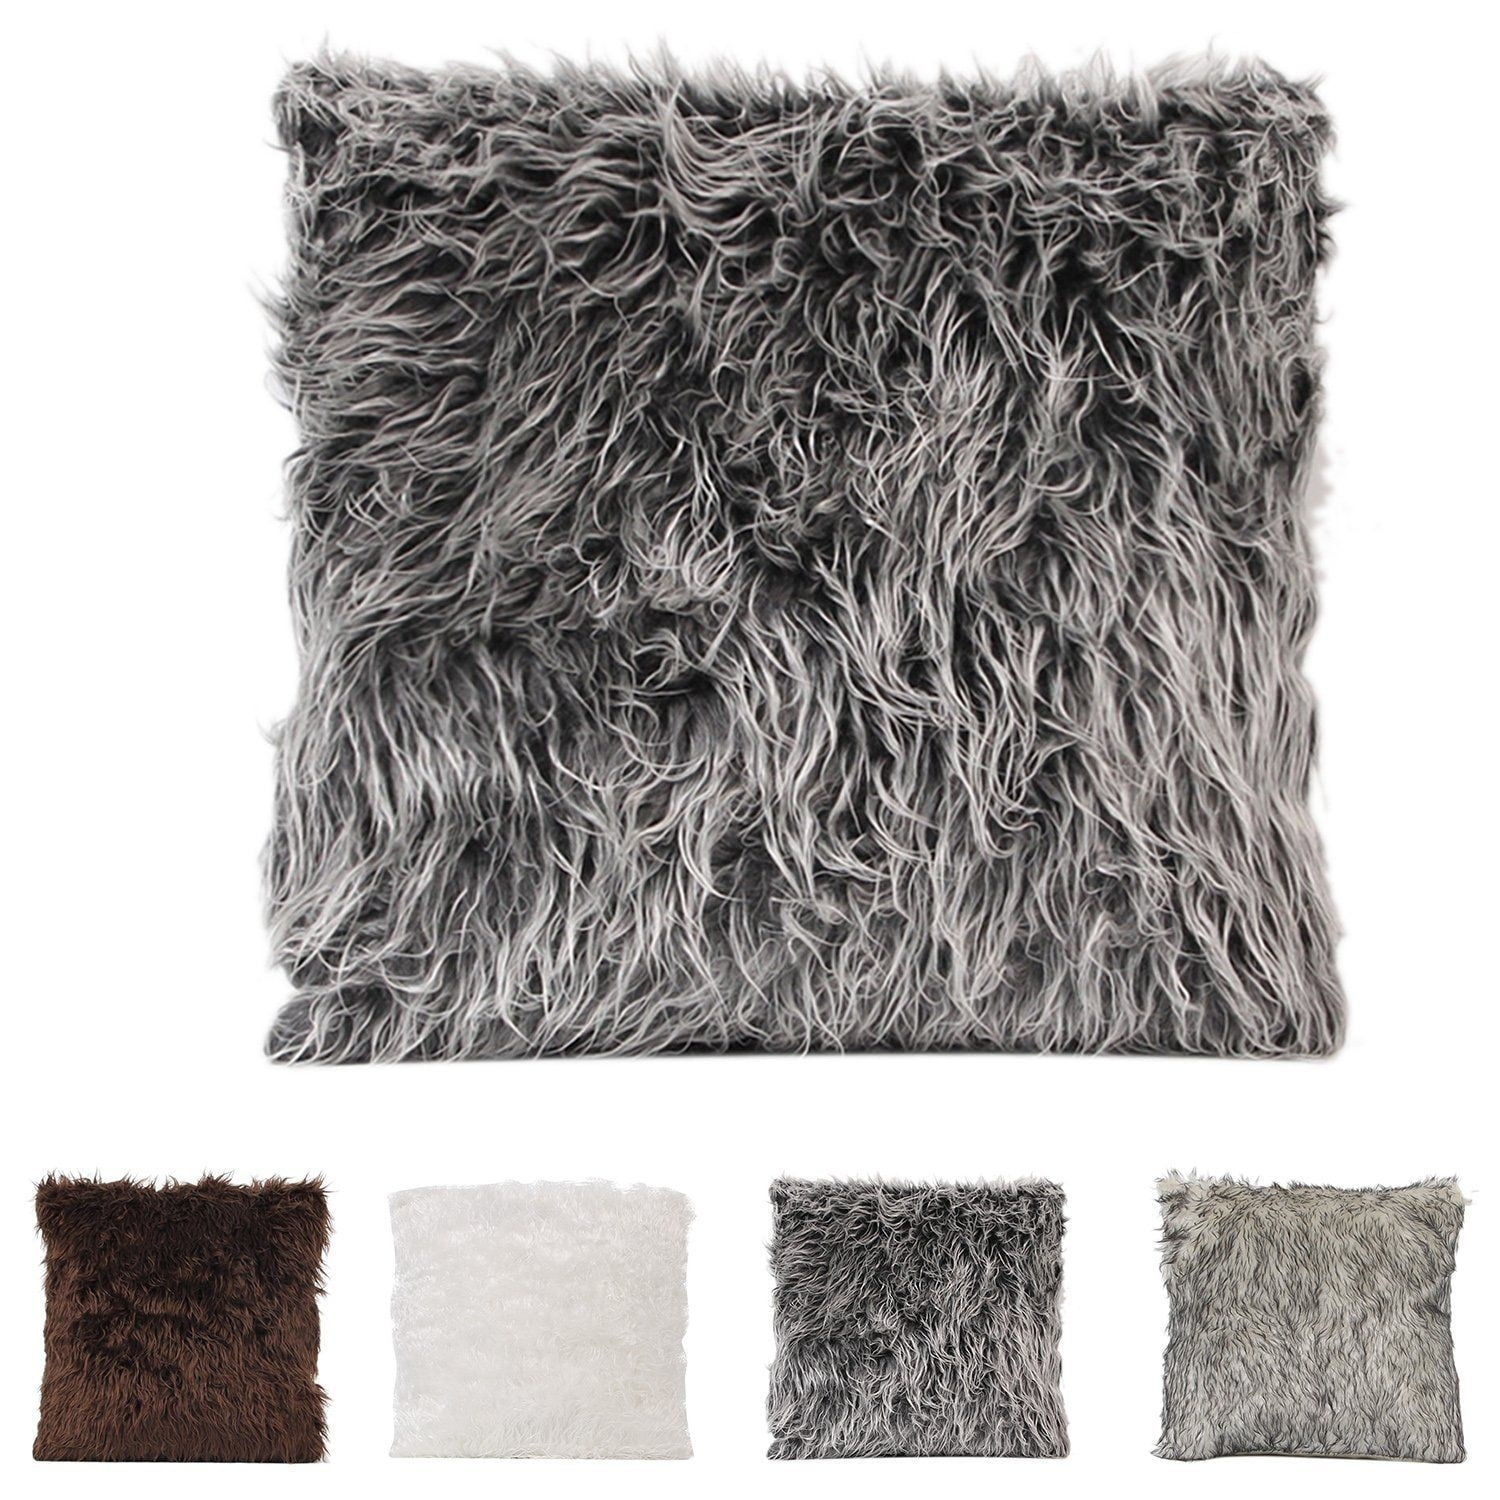 18" Soft Fur Fluffy Plush Throw Pillow Cases Home Decor Sofa Waist Cushion Cover 